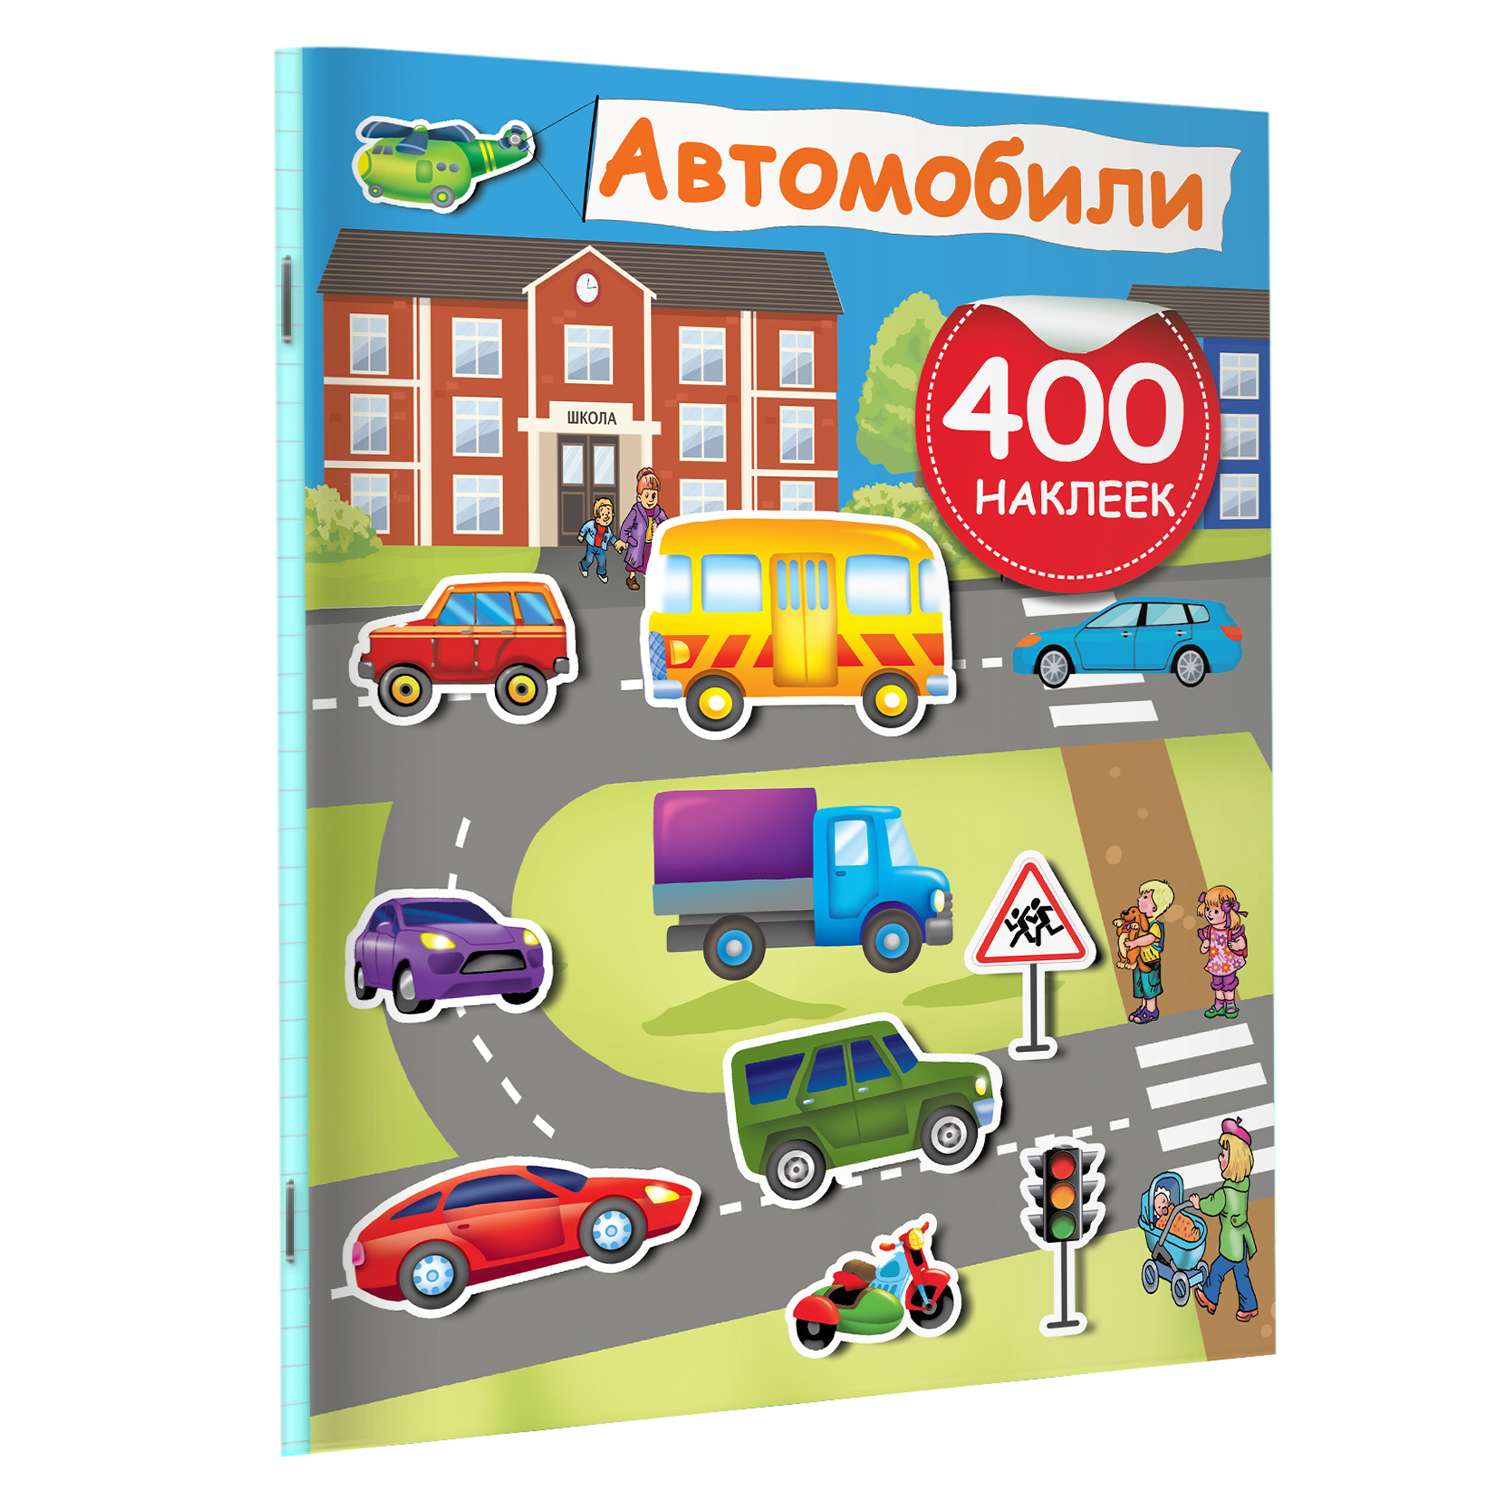 Книга Автомобили 400 наклеек - фото 5